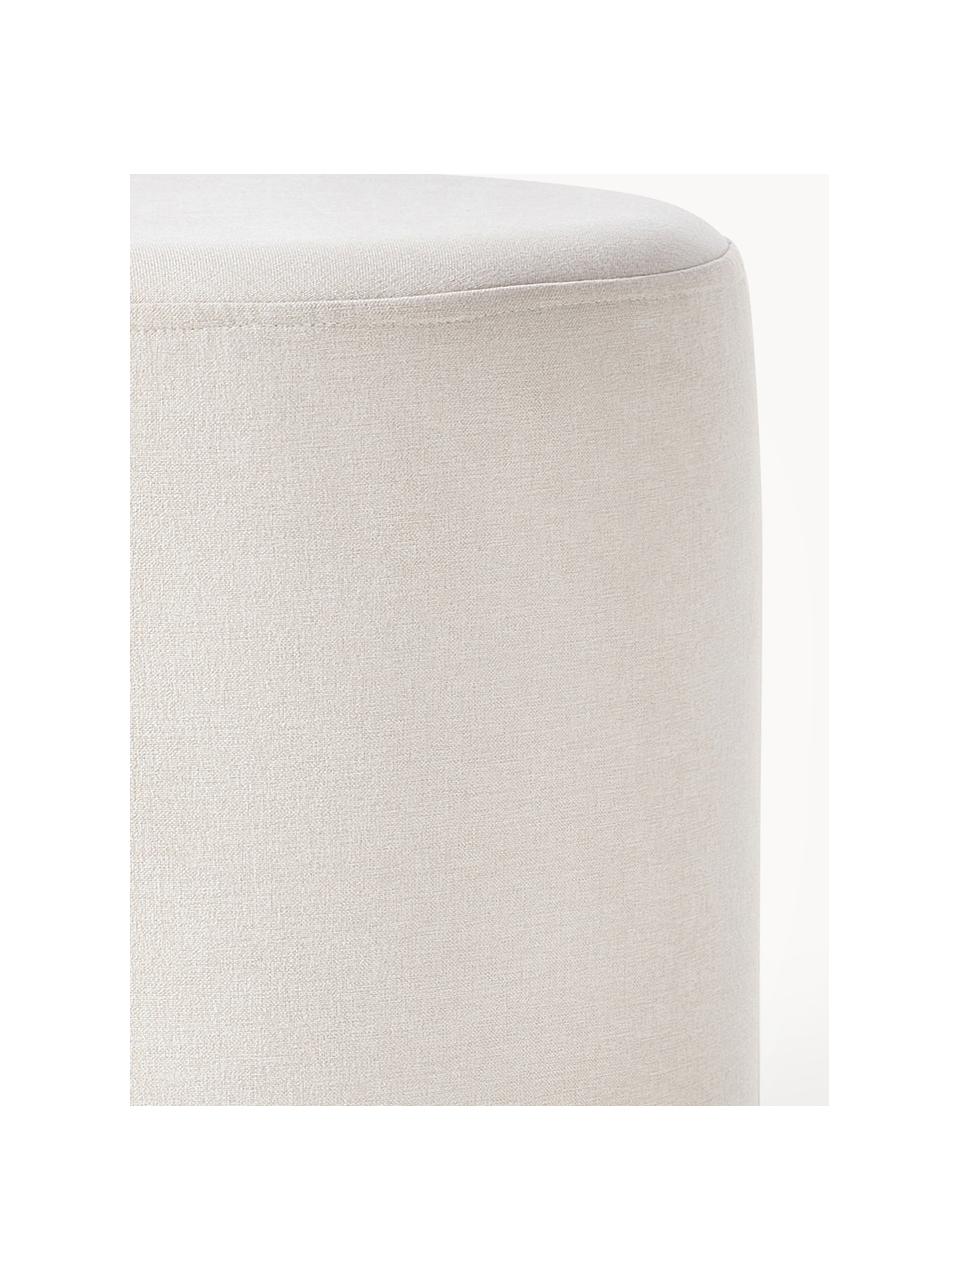 Kruk Daisy, Bekleding: 100% polyester Met 40.000, Frame: multiplex Het materiaal d, Geweven stof gebroken wit, Ø 38 x H 45 cm